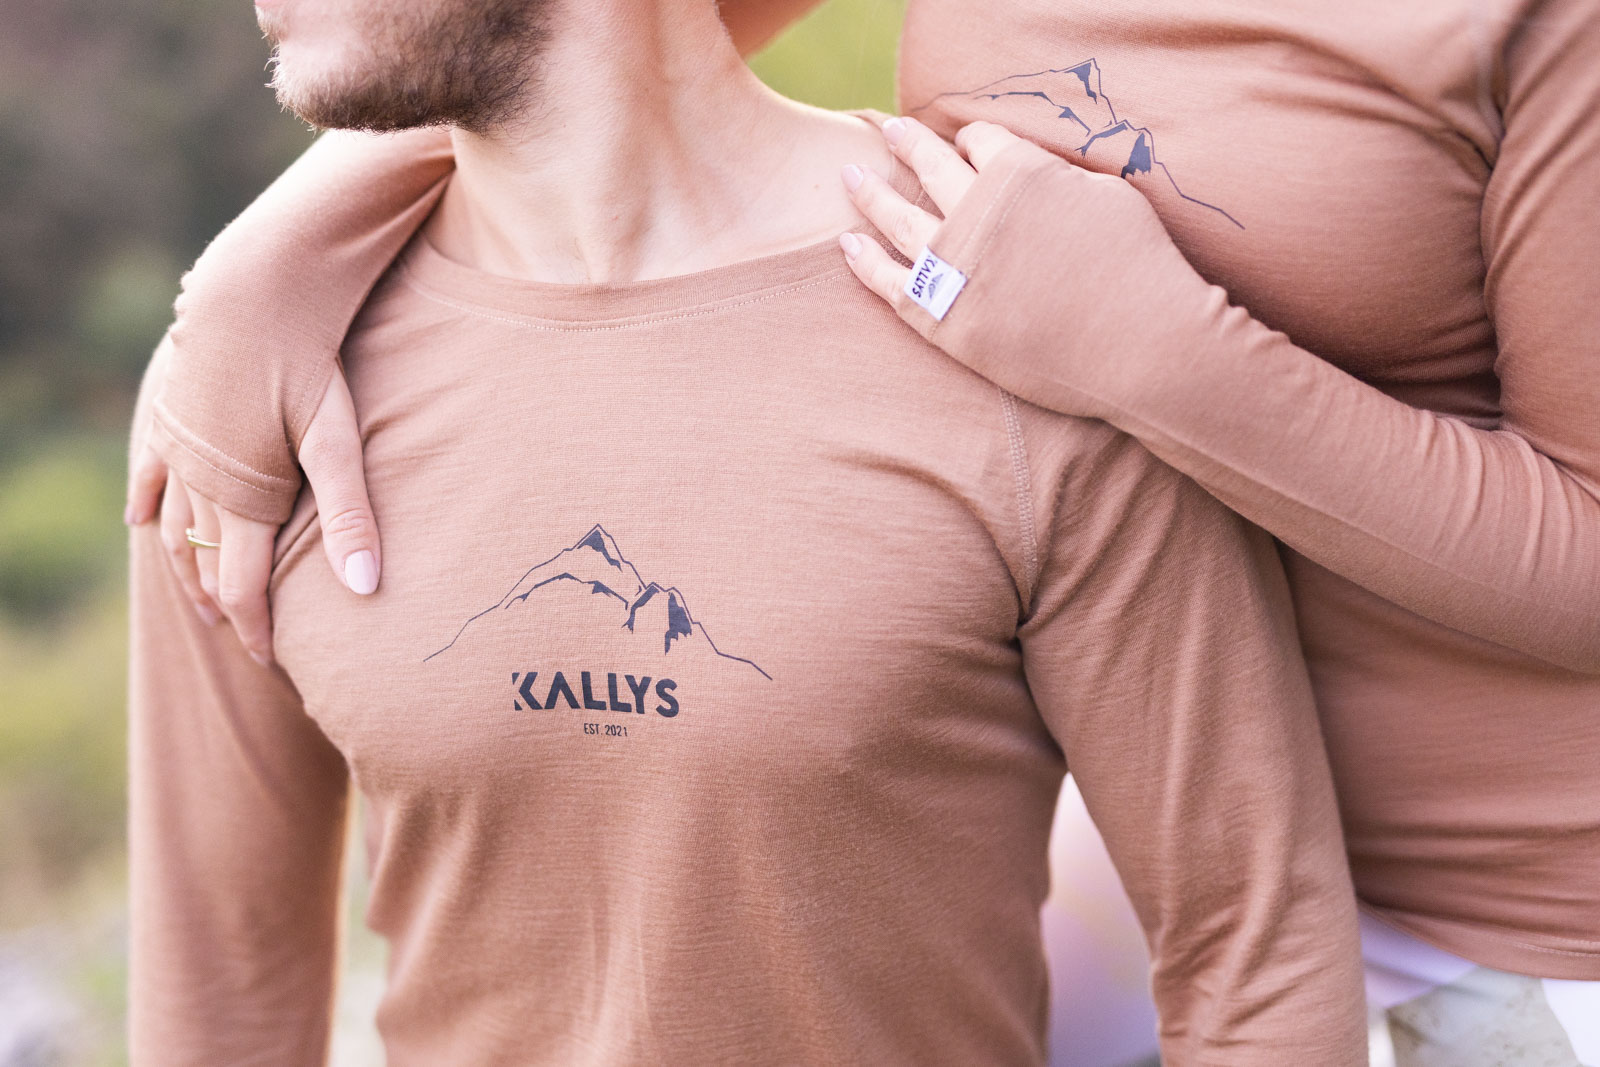 kallys summit merino tričko s dlhým rukávom hnedé